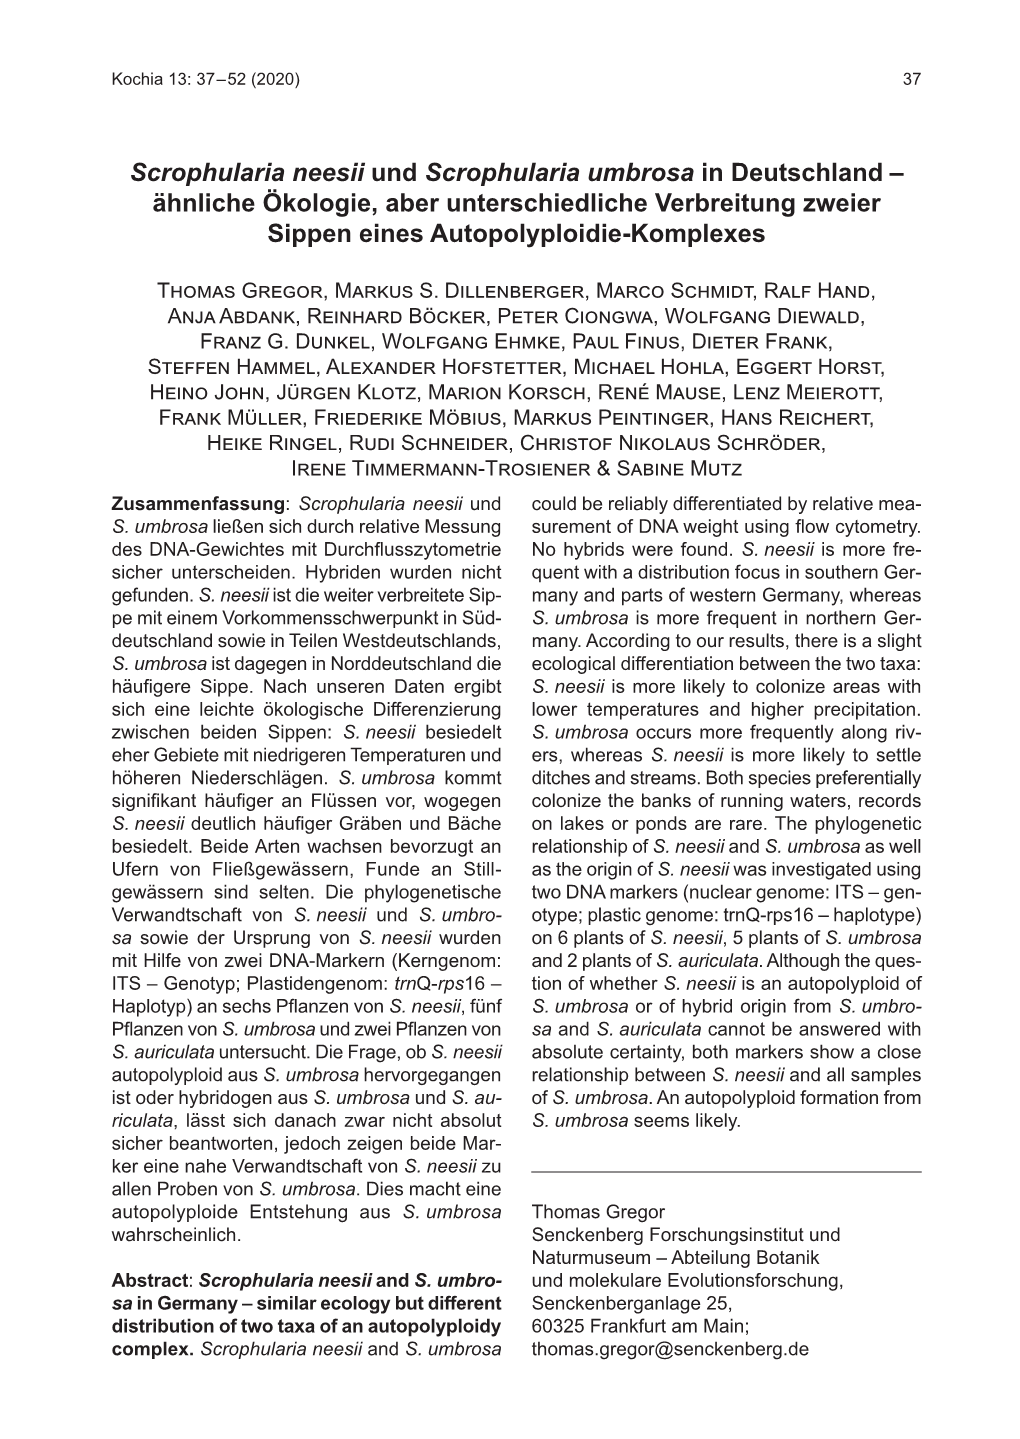 Scrophularia Neesii Und Scrophularia Umbrosa in Deutschland – Ähnliche Ökologie, Aber Unterschiedliche Verbreitung Zweier Sippen Eines Autopolyploidie-Komplexes